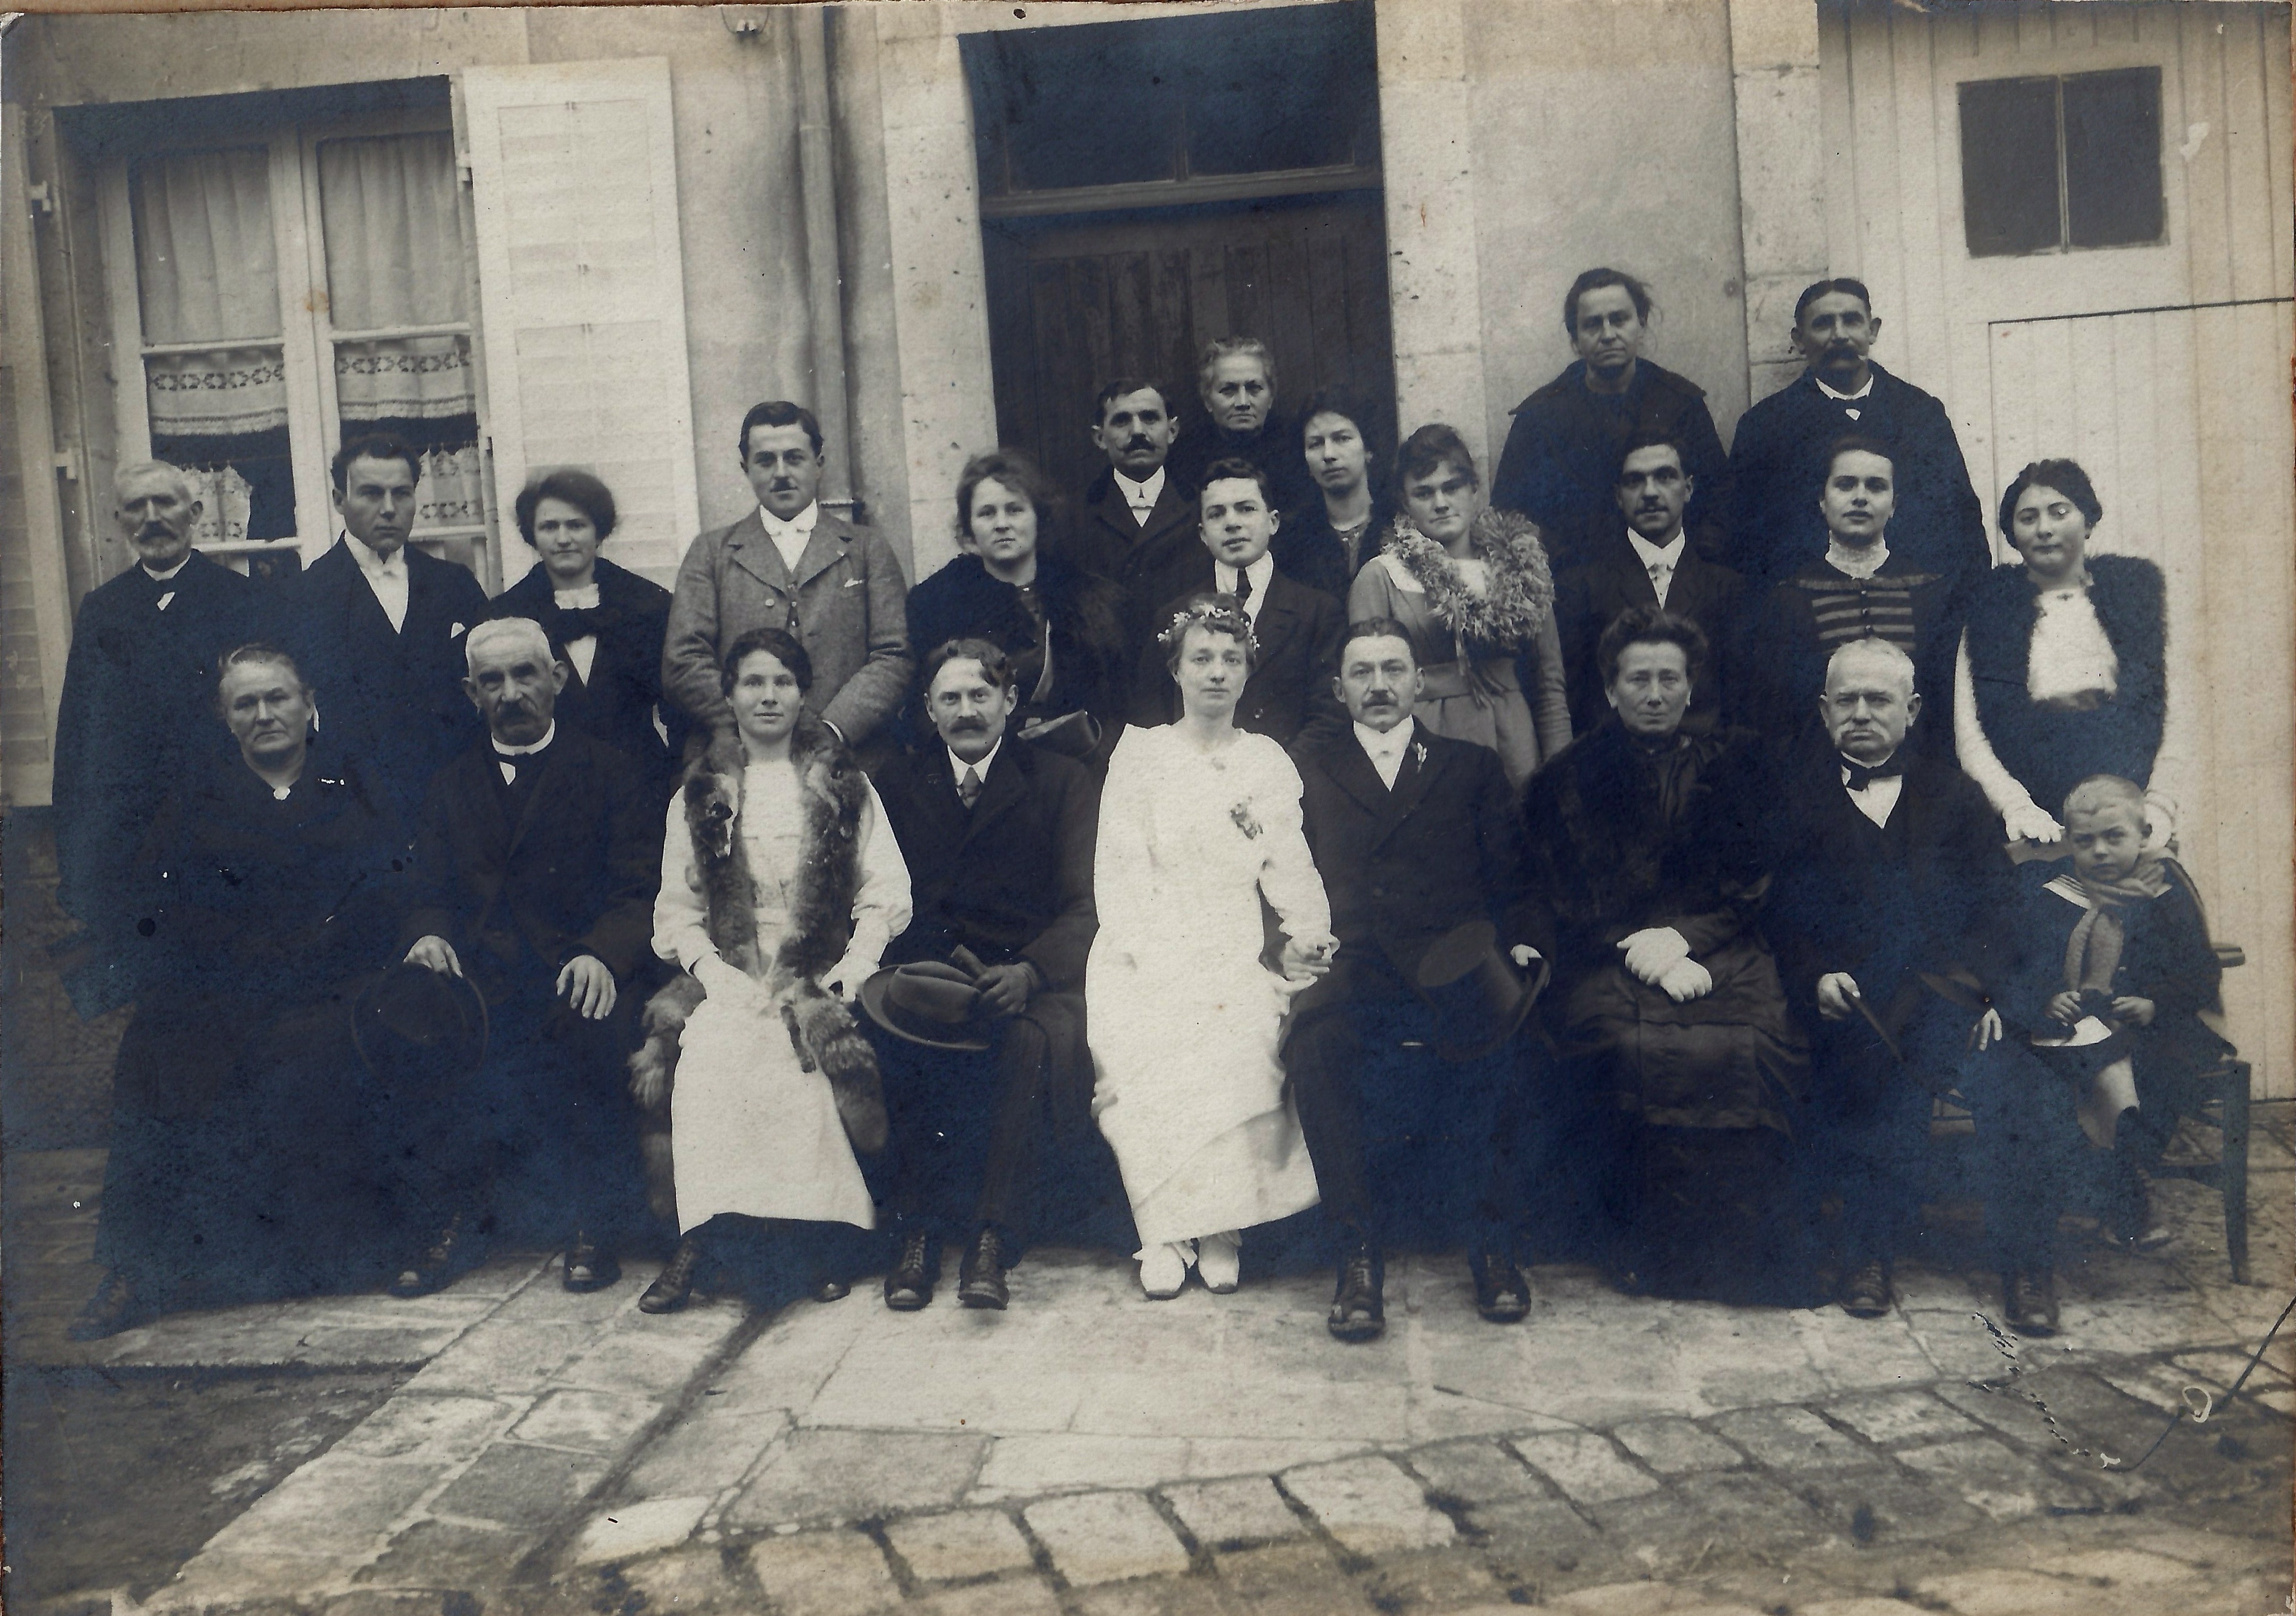 Mariage de Marcel Viard et Emilienne Jacob en 1919